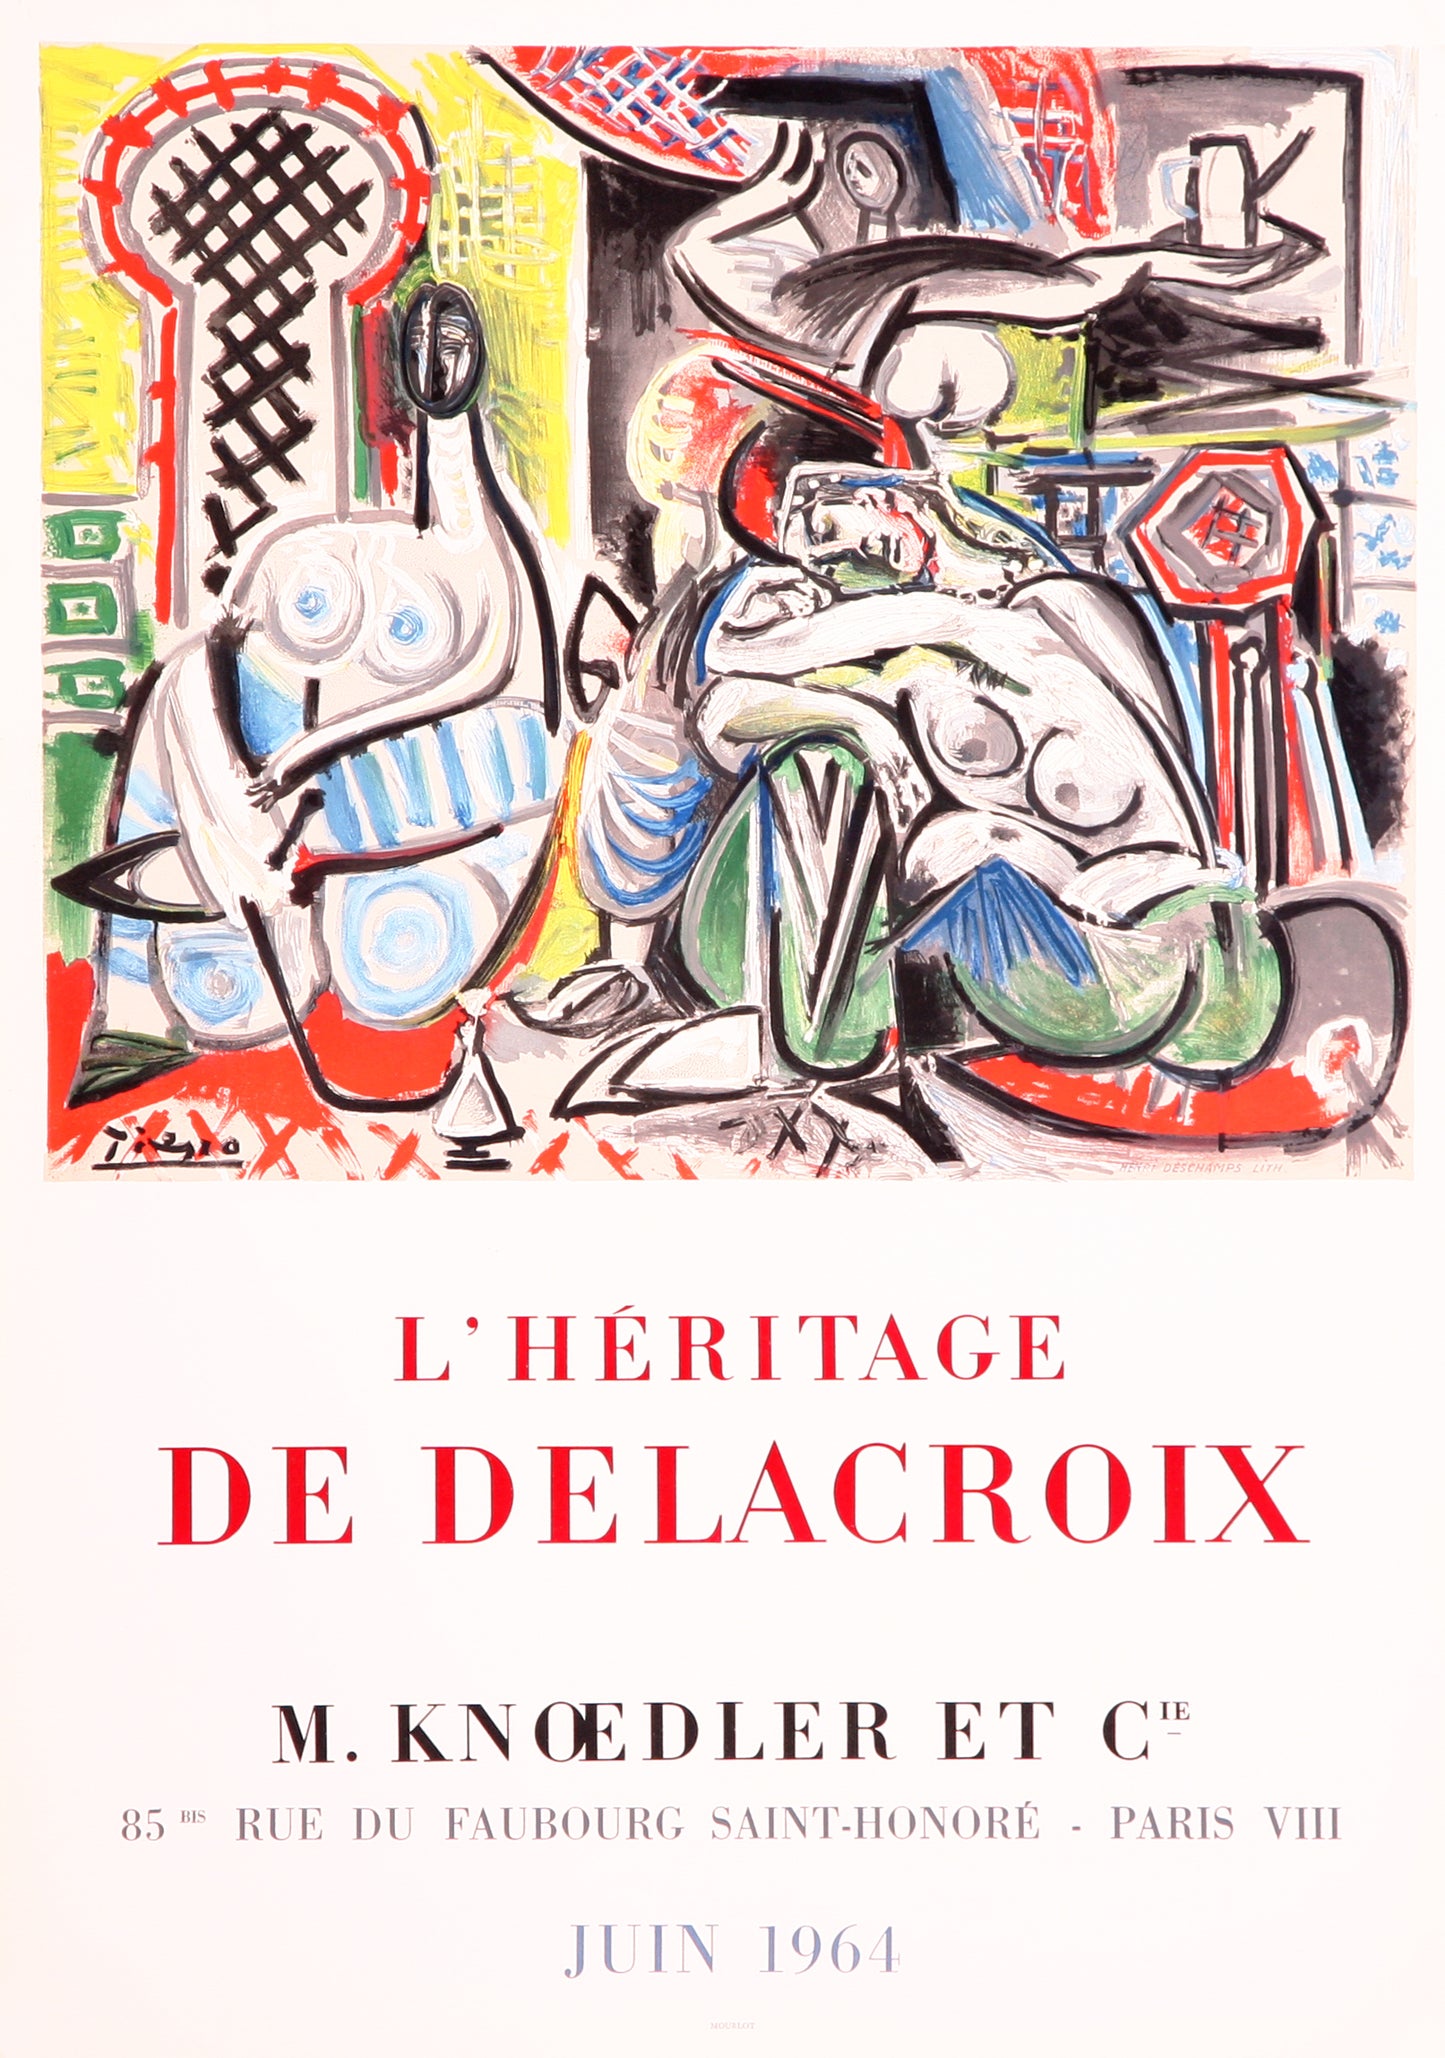 Les Femmes d'Alger - L'Héritage De Delacroix (after) Pablo Picasso, 1964 - Mourlot Editions - Fine_Art - Poster - Lithograph - Wall Art - Vintage - Prints - Original